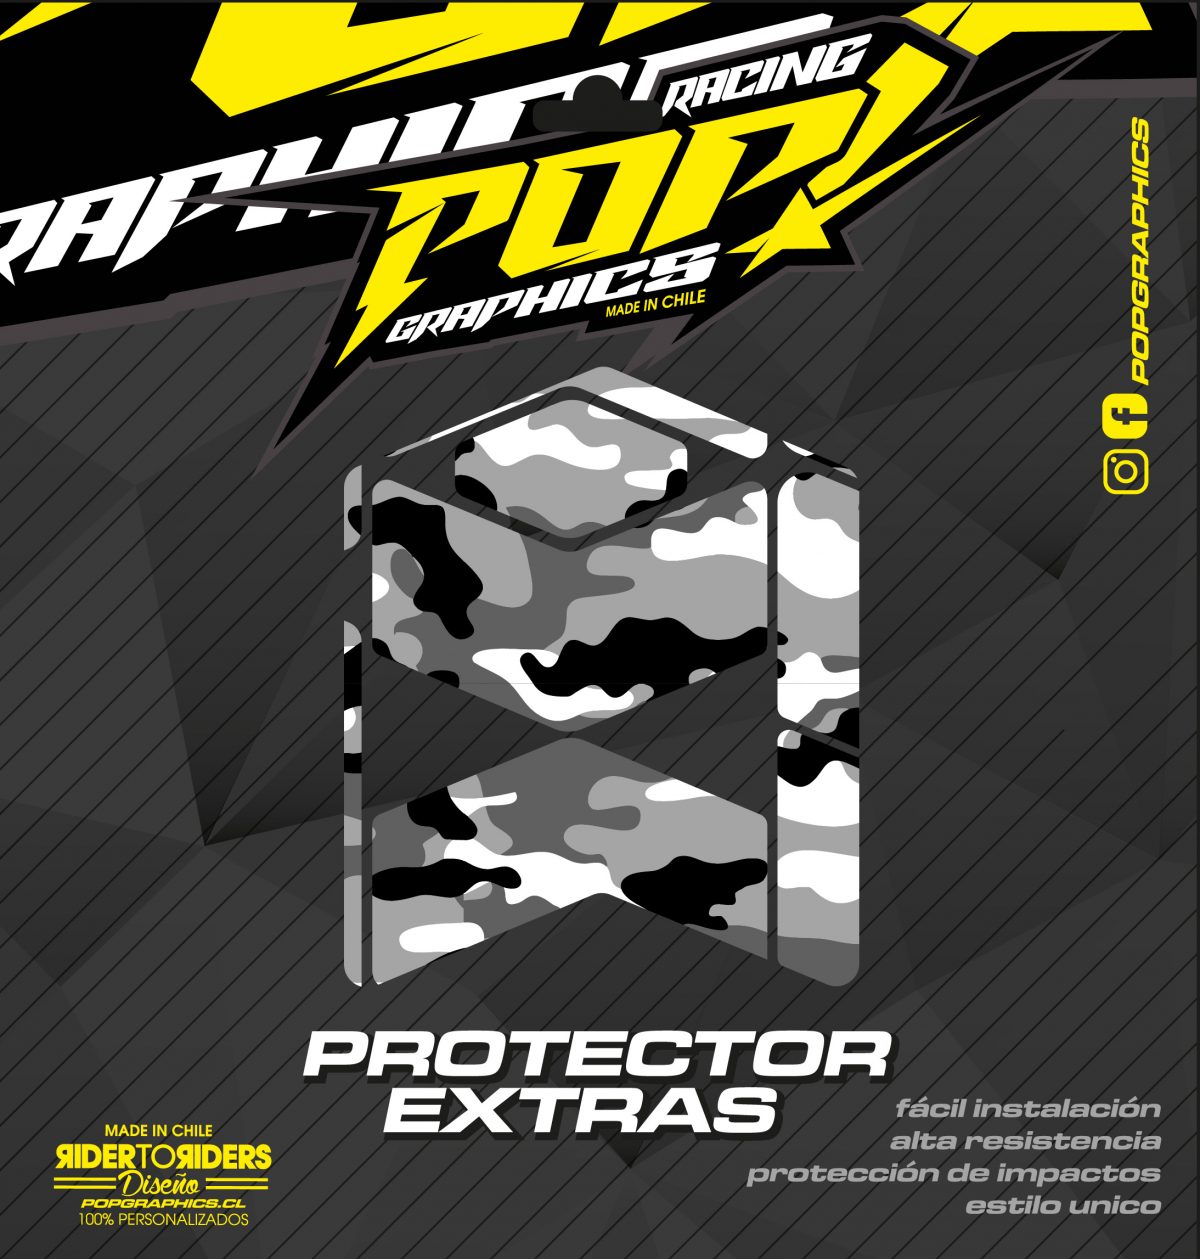 Protector extra transparente camuflado